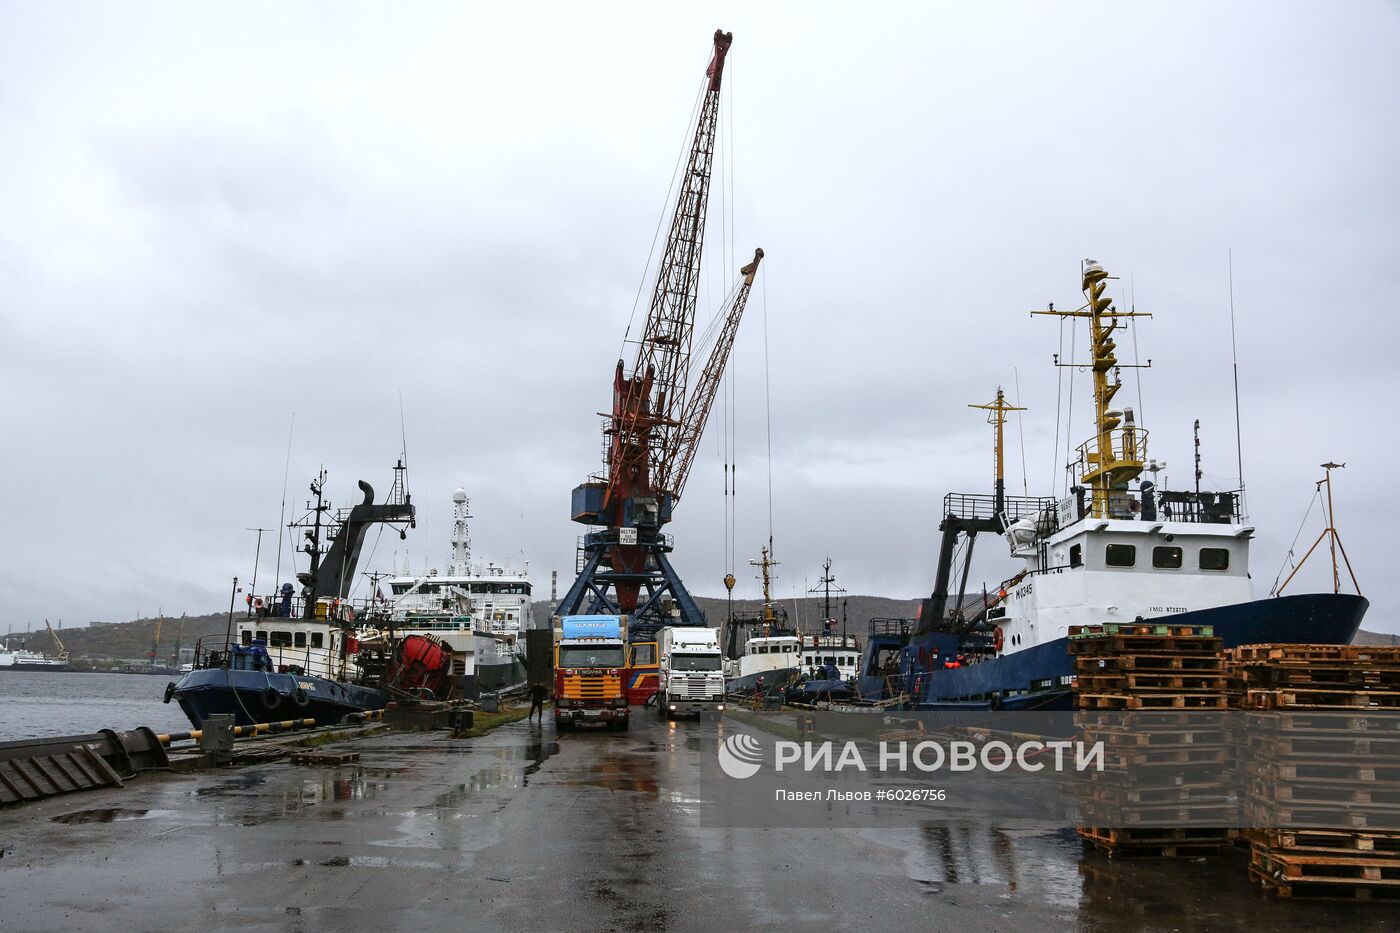 Прибытие судна с грузом креветок в порт Мурманска